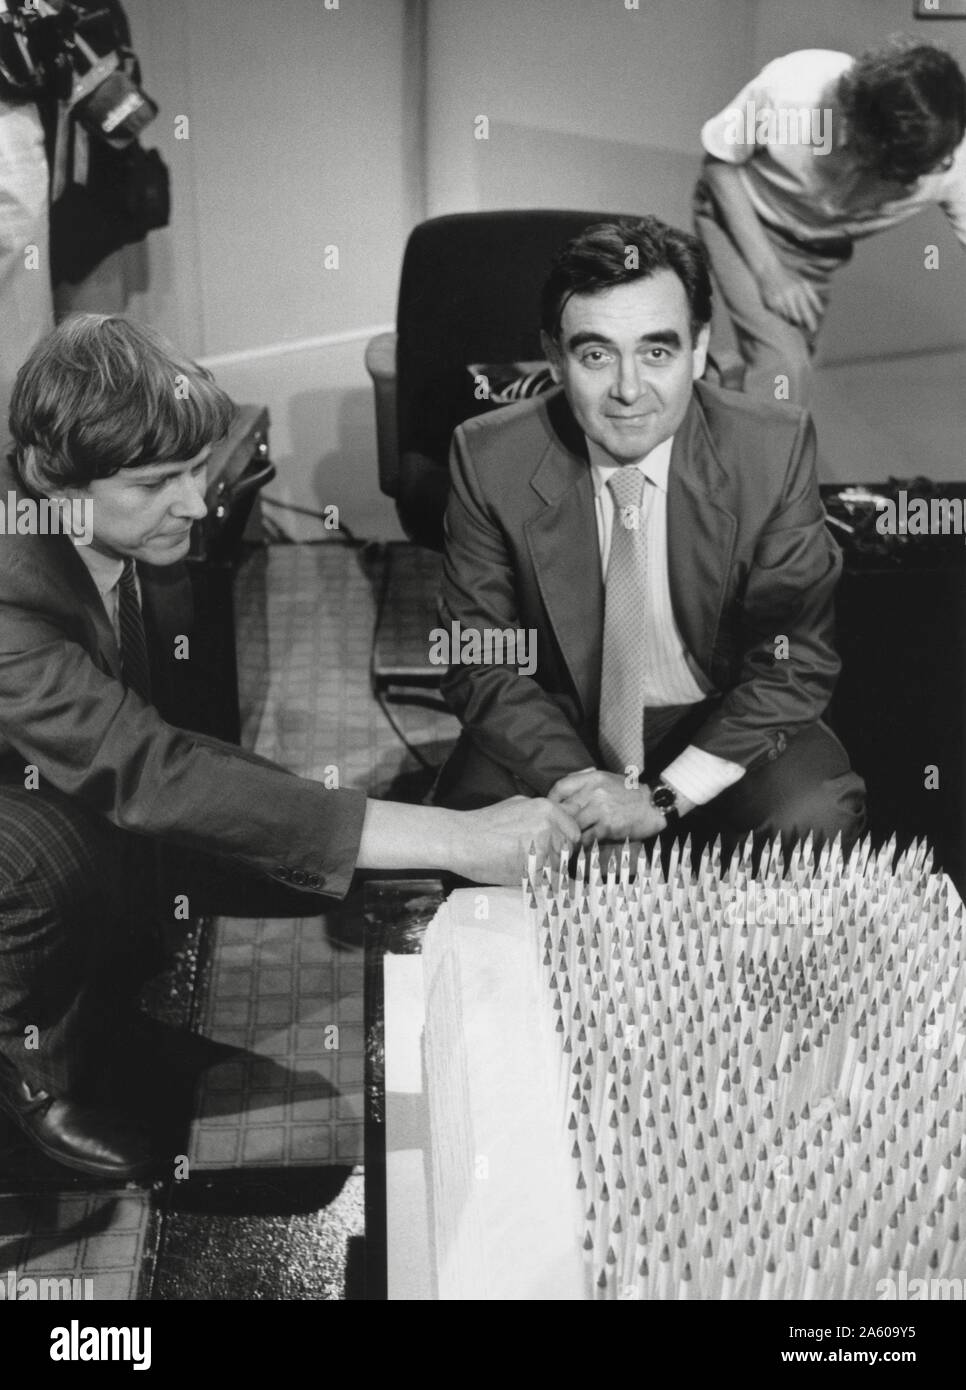 Présentateur de télévision français Bernard Pivot à l'occasion du 500e  anniversaire de son émission de télévision "apostrophes". 27 septembre,  1985 Photo Stock - Alamy